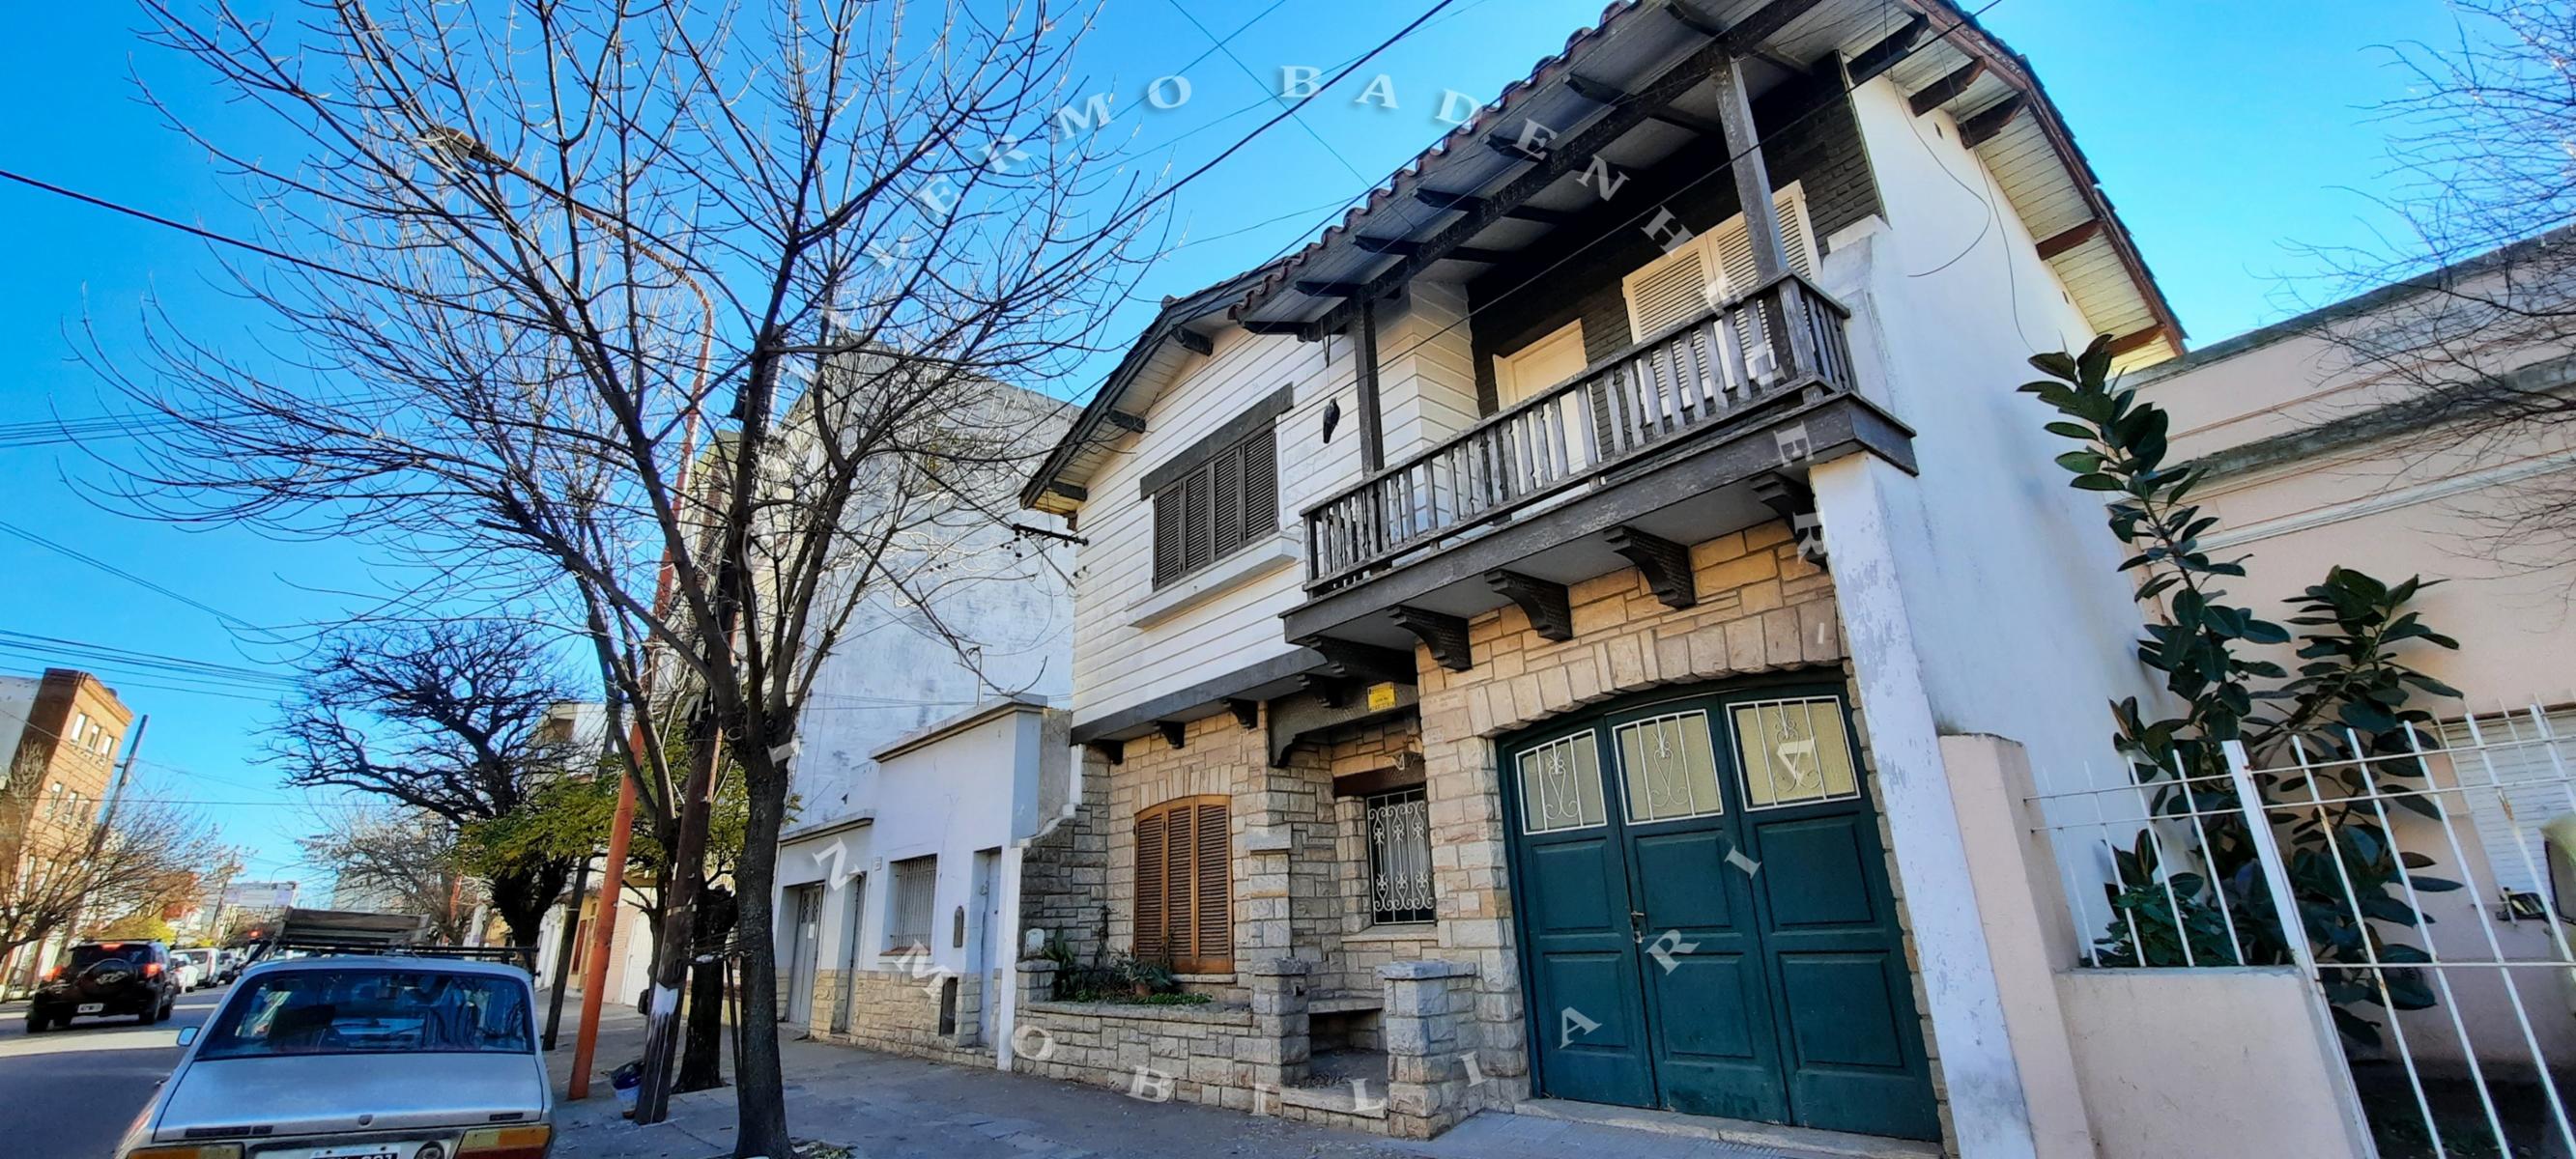 Casa en venta de Estilo Espa�ol Mediterraneo - Alvarado 900